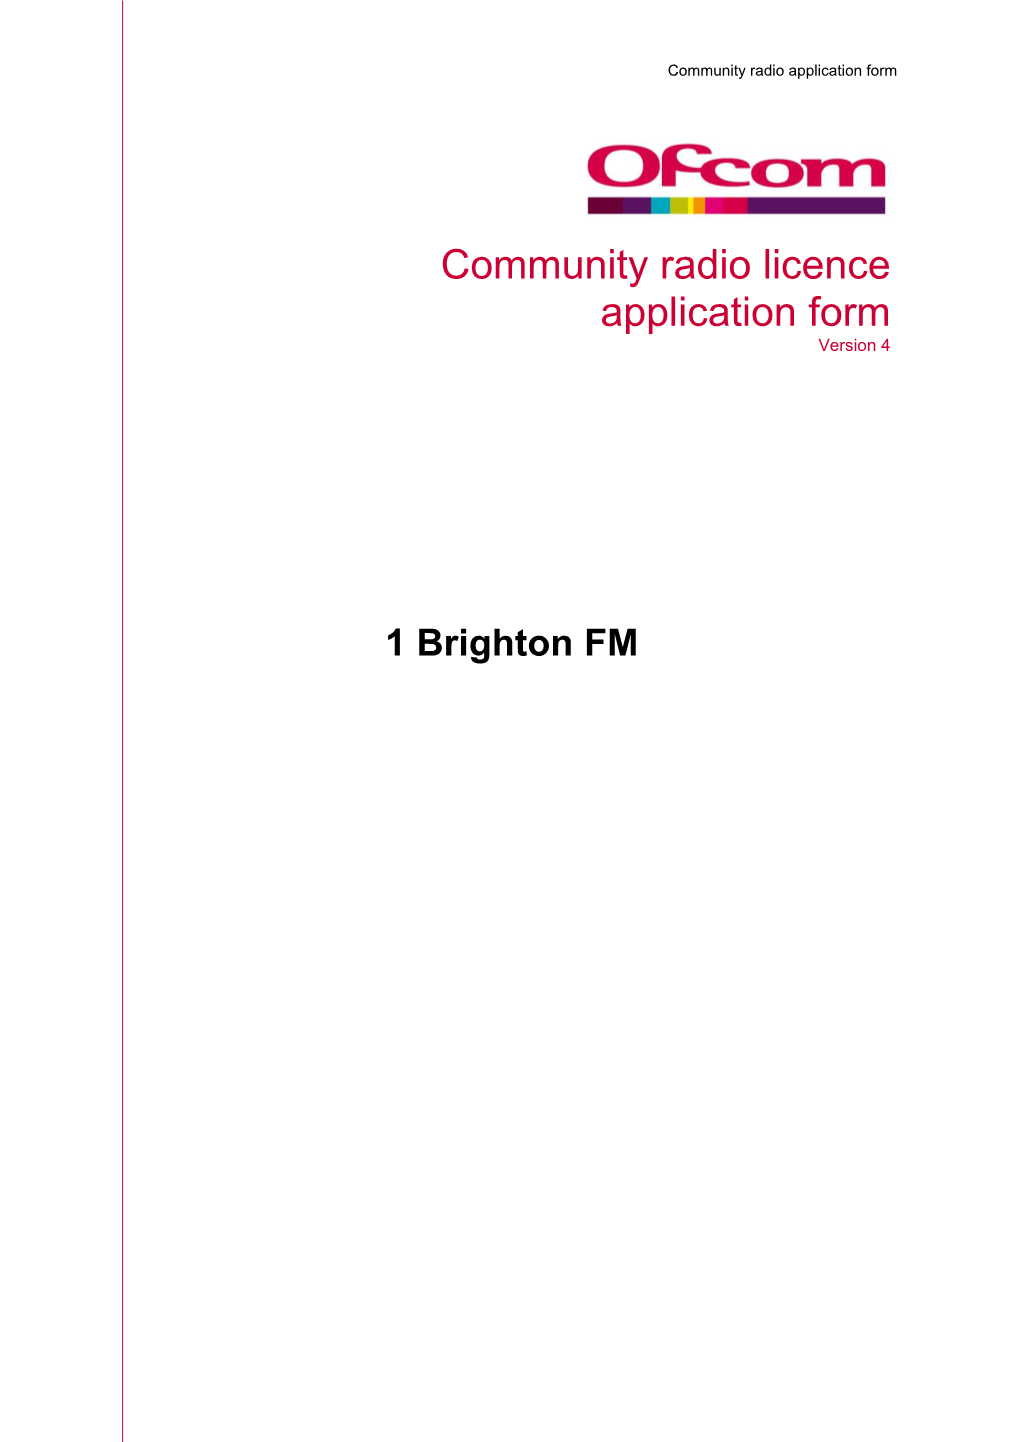 1 Brighton FM Application Form